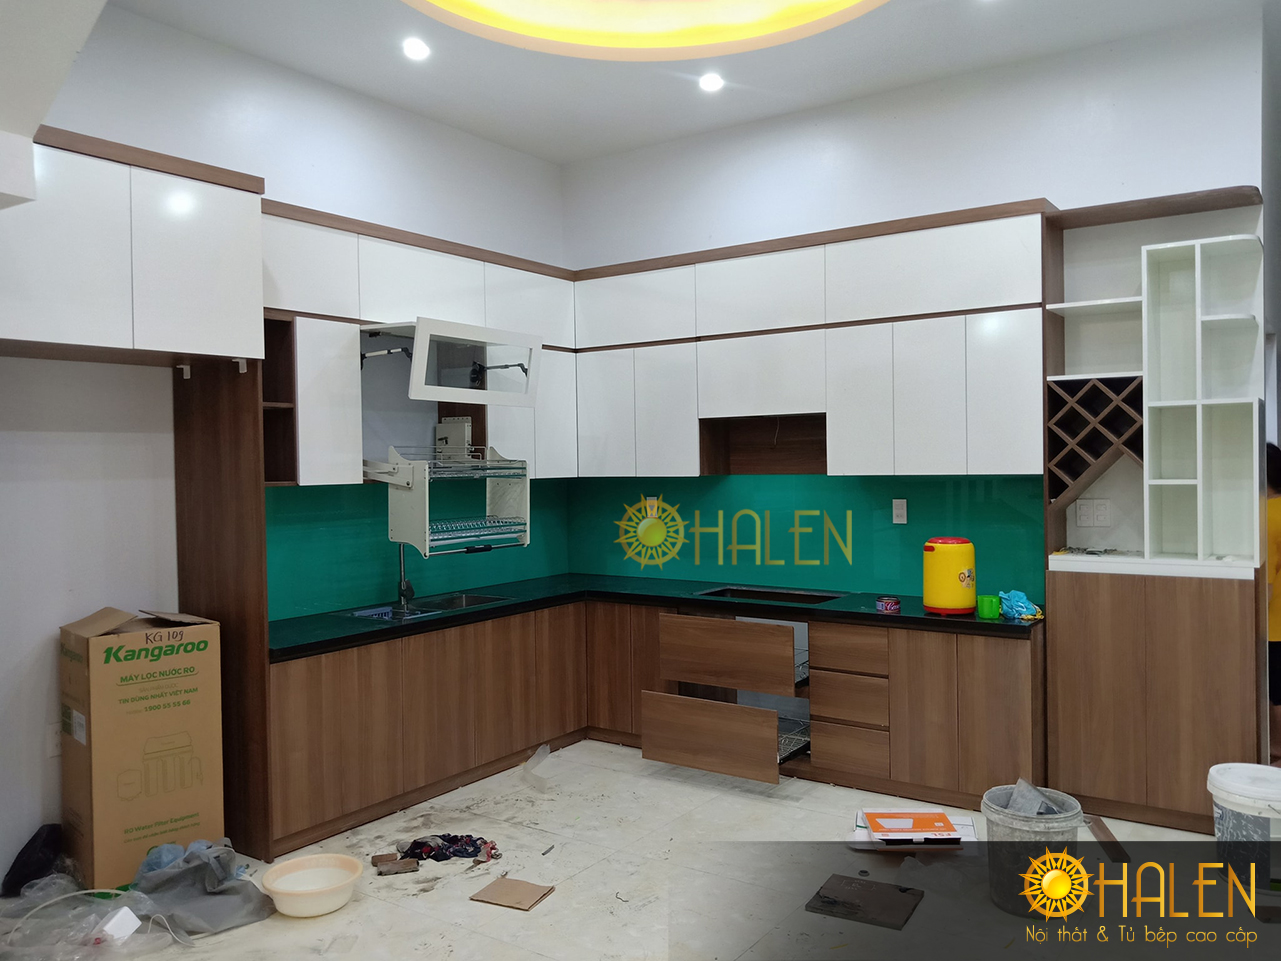 Hình ảnh bộ tủ bếp đã thi công hoàn thiện cho khách hàng tại Mê Linh - sử dụng kính ốp bếp màu xanh ngọc hiện đại